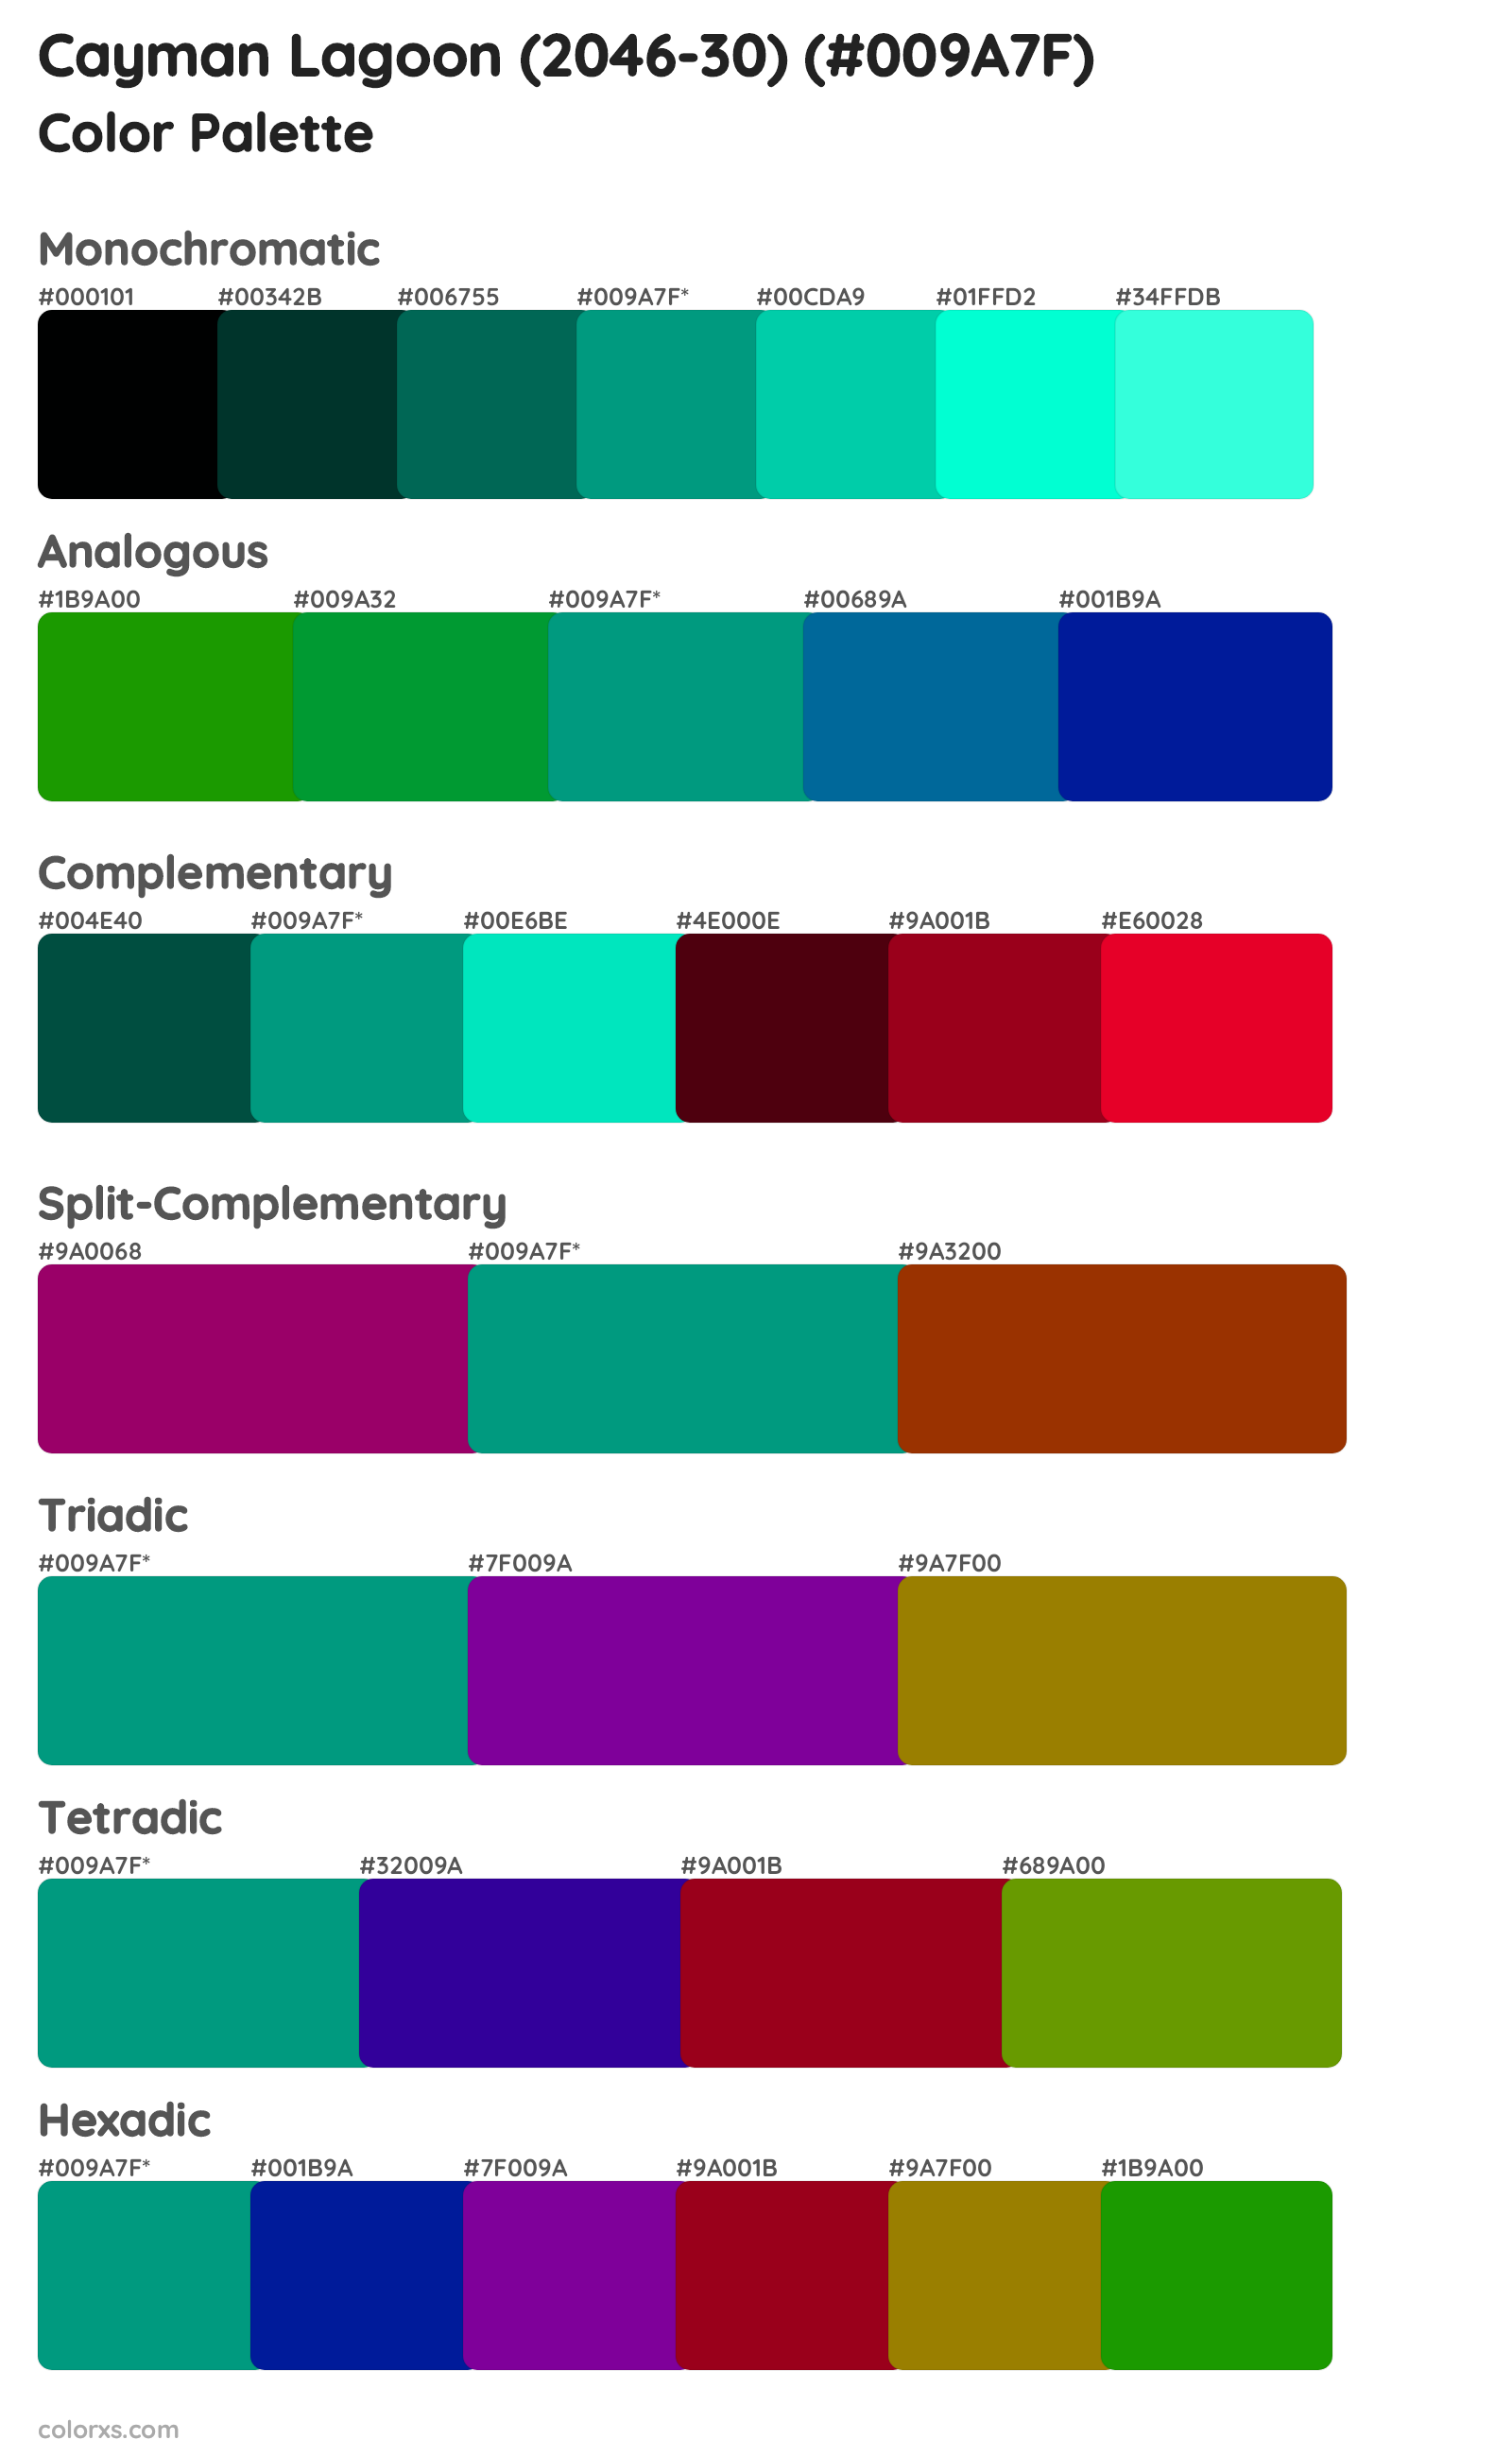 Cayman Lagoon (2046-30) Color Scheme Palettes